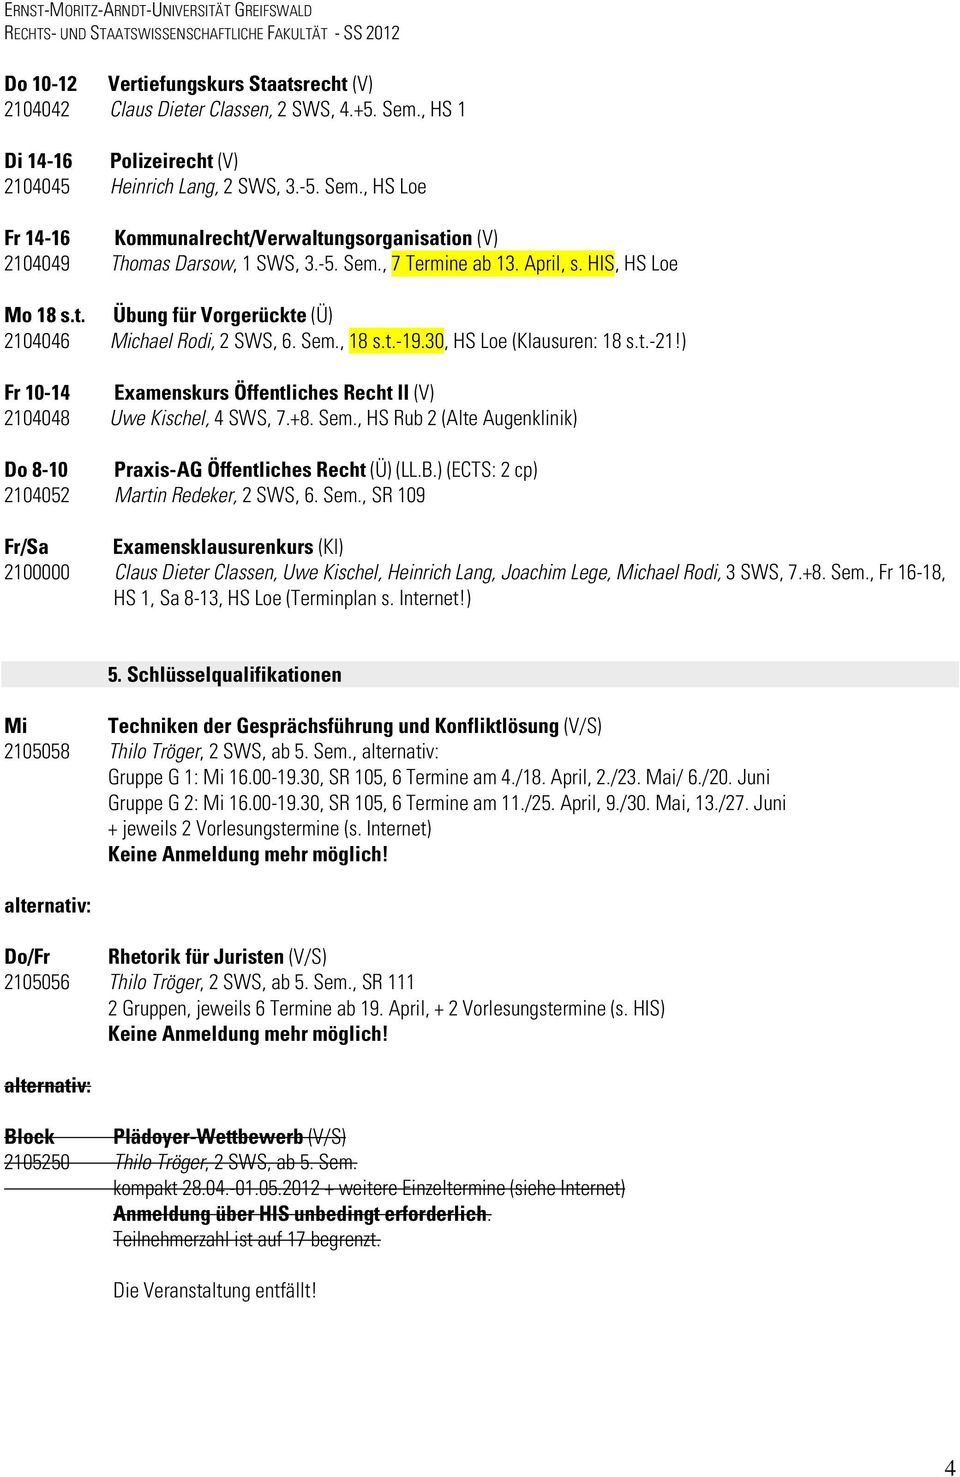 ) Fr 10-14 Examenskurs Öffentliches Recht II (V) 2104048 Uwe Kischel, 4 SWS, 7.+8. Sem., HS Rub 2 (Alte Augenklinik) Do 8-10 Praxis-AG Öffentliches Recht (Ü) (LL.B.